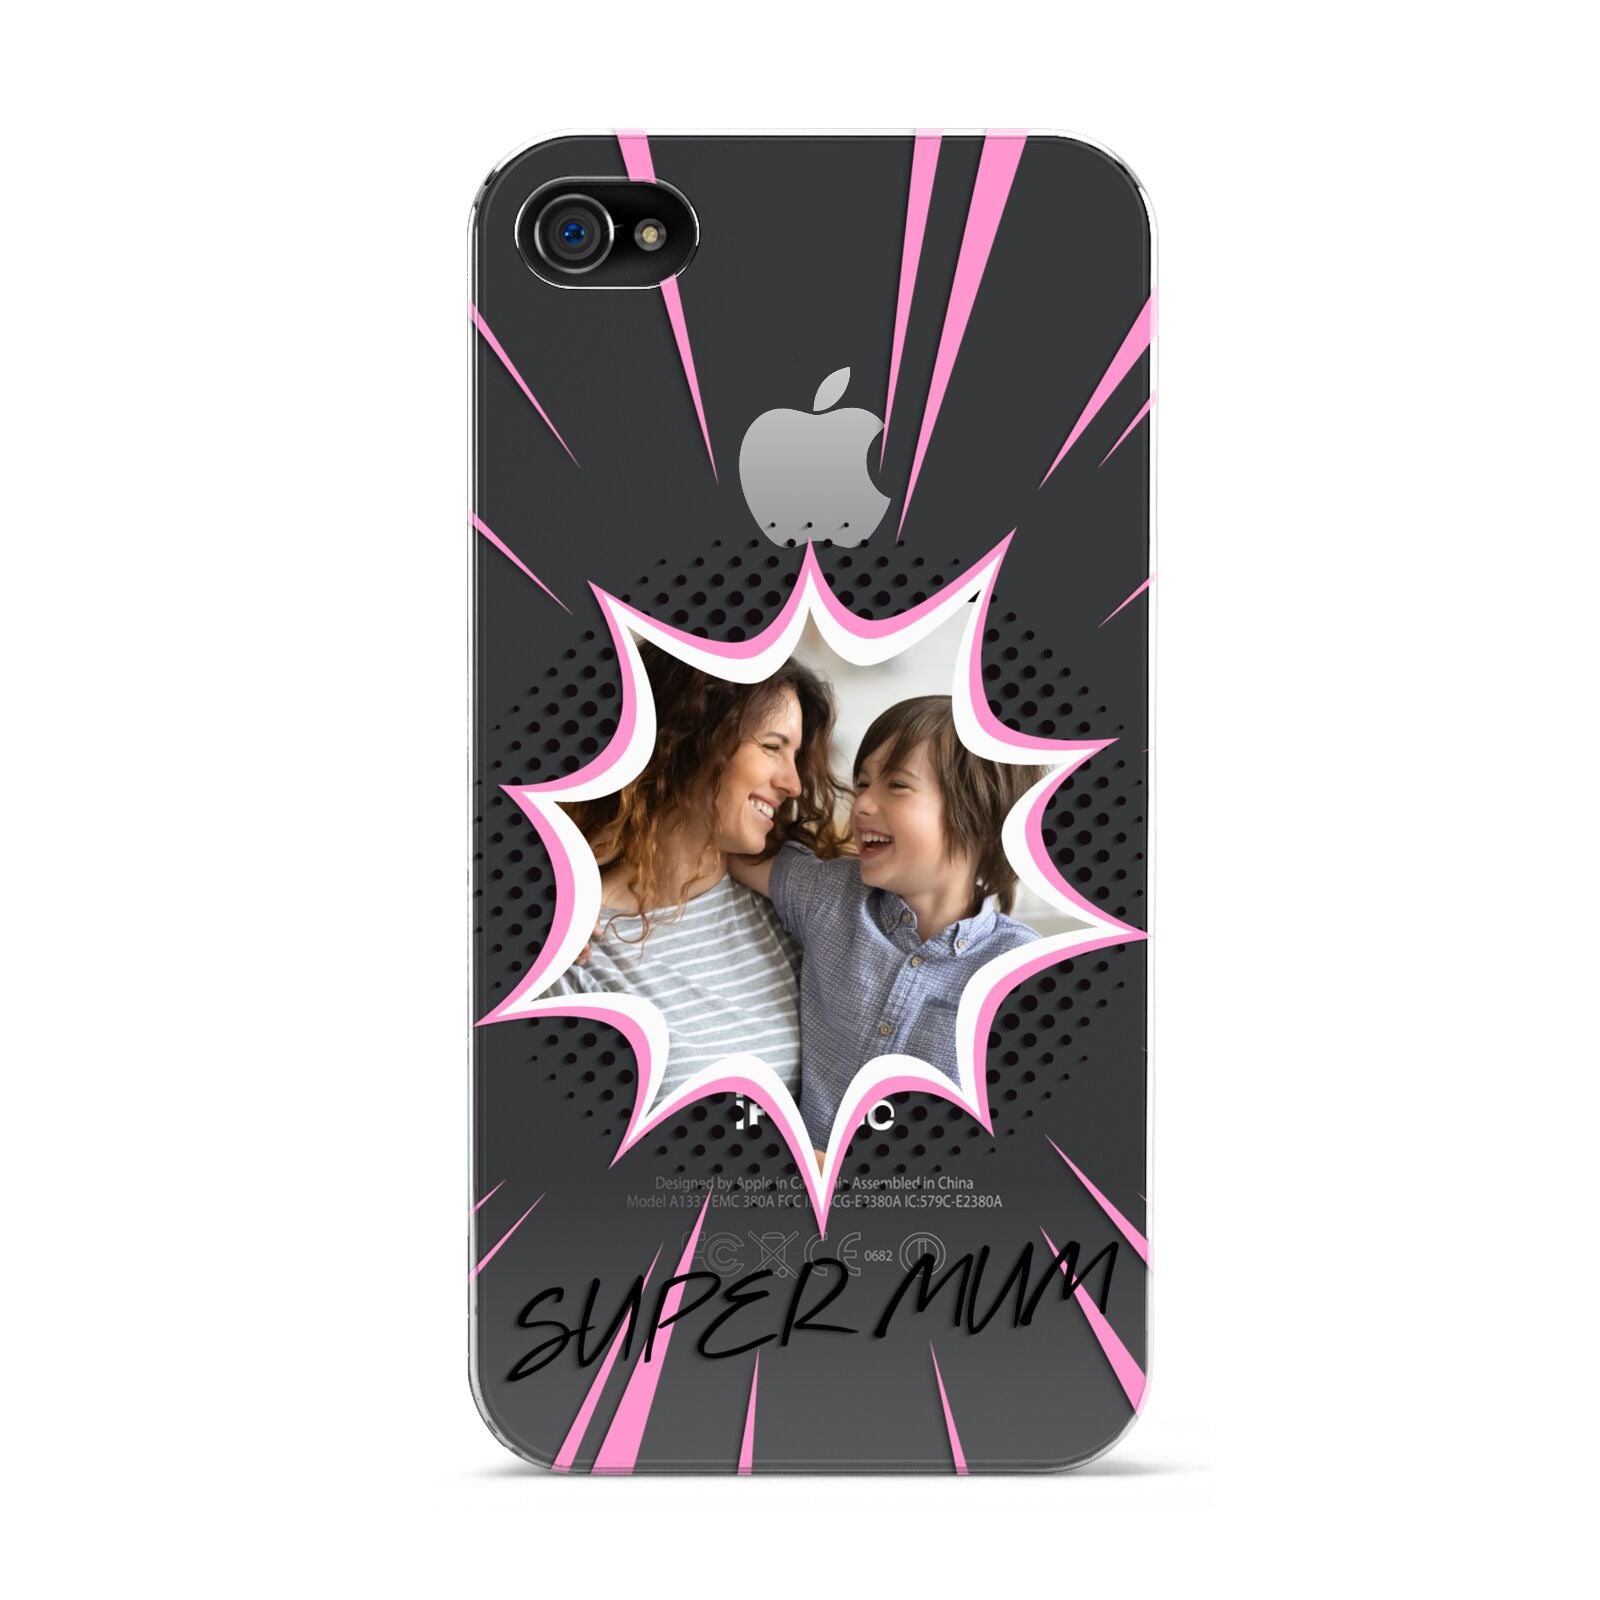 Super Mum Photo Apple iPhone 4s Case